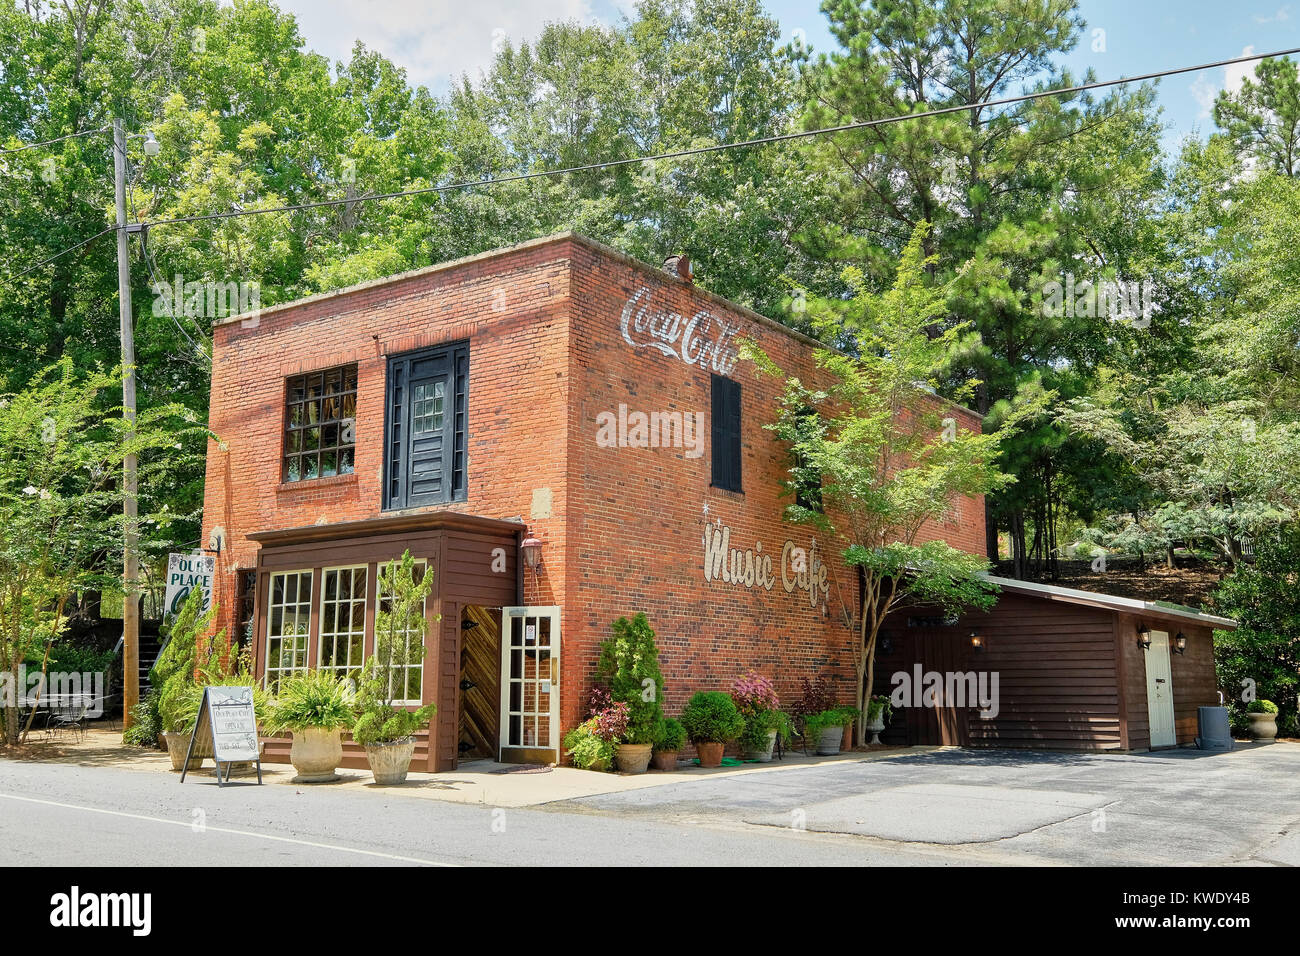 Nuestro lugar Cafe es un restaurante rural en Wetumpka, Alabama, EE.UU., la transformación de un viejo edificio de ladrillo vintage con publicidad en el lateral. Foto de stock